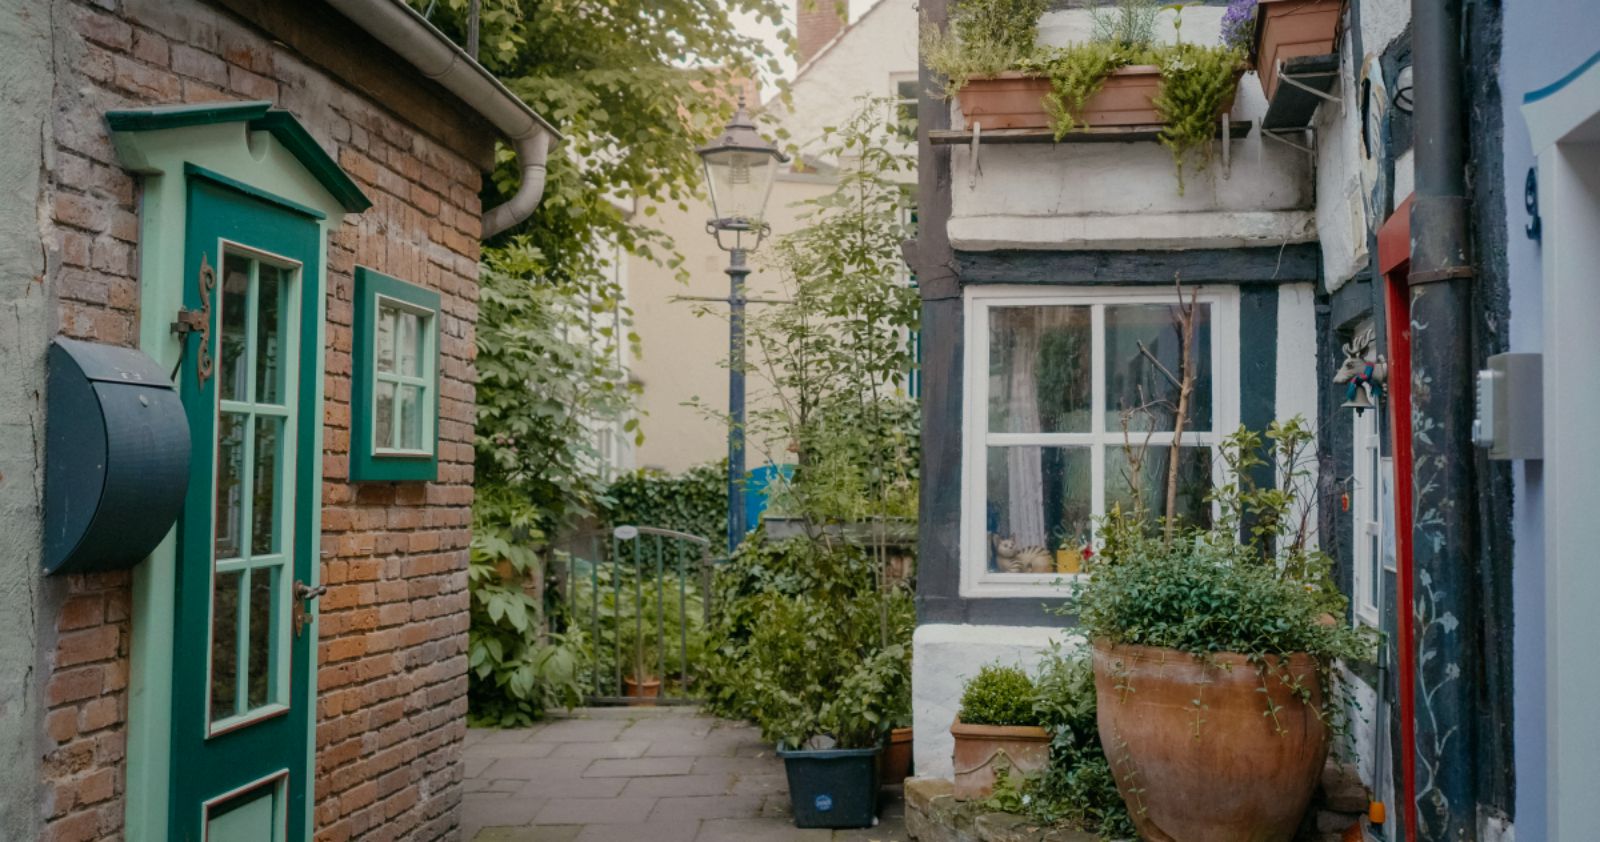 Das kleinste Haus Deutschlands als Ferienwohung mieten. Fynn Kliemann hat mit LDGG in Bremen im Schnoor das Minihaus gekauft und wird nun als Ferienwohnung umgebaut. Einzigartiger Urlaub